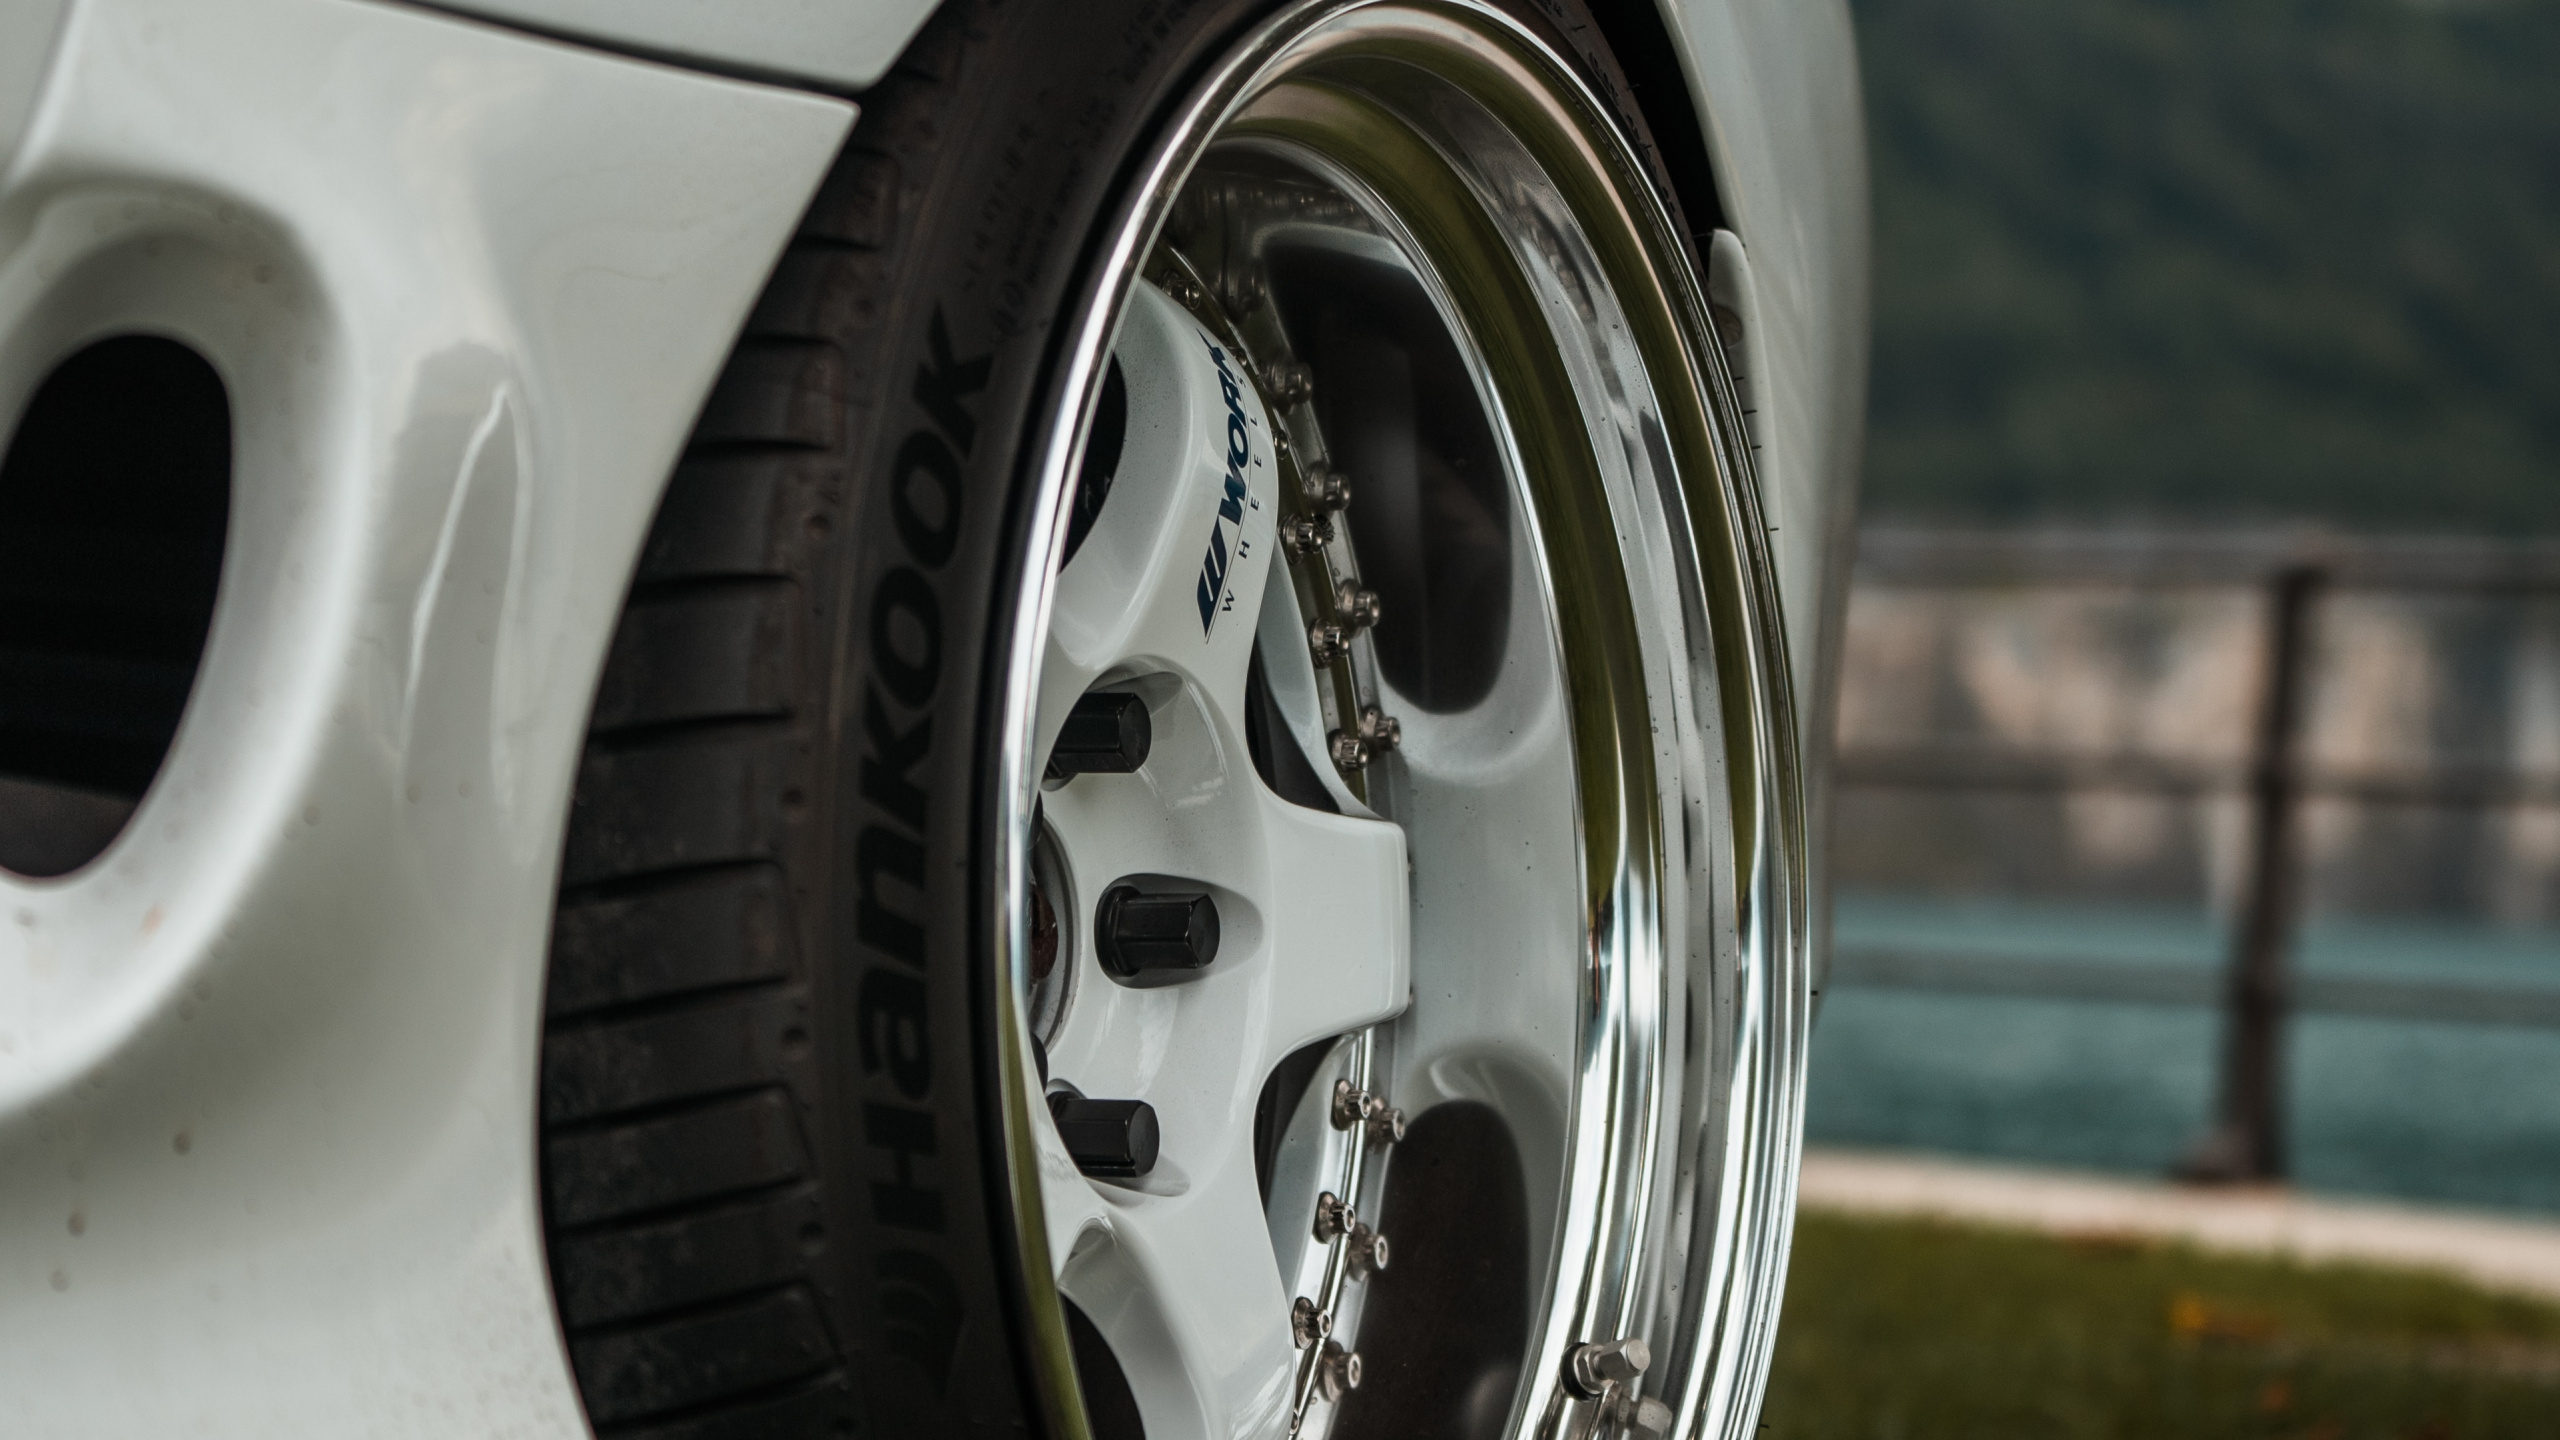 Rim, 轮胎, 铝合金轮毂, 汽车轮胎, 自动的一部分 壁纸 2560x1440 允许